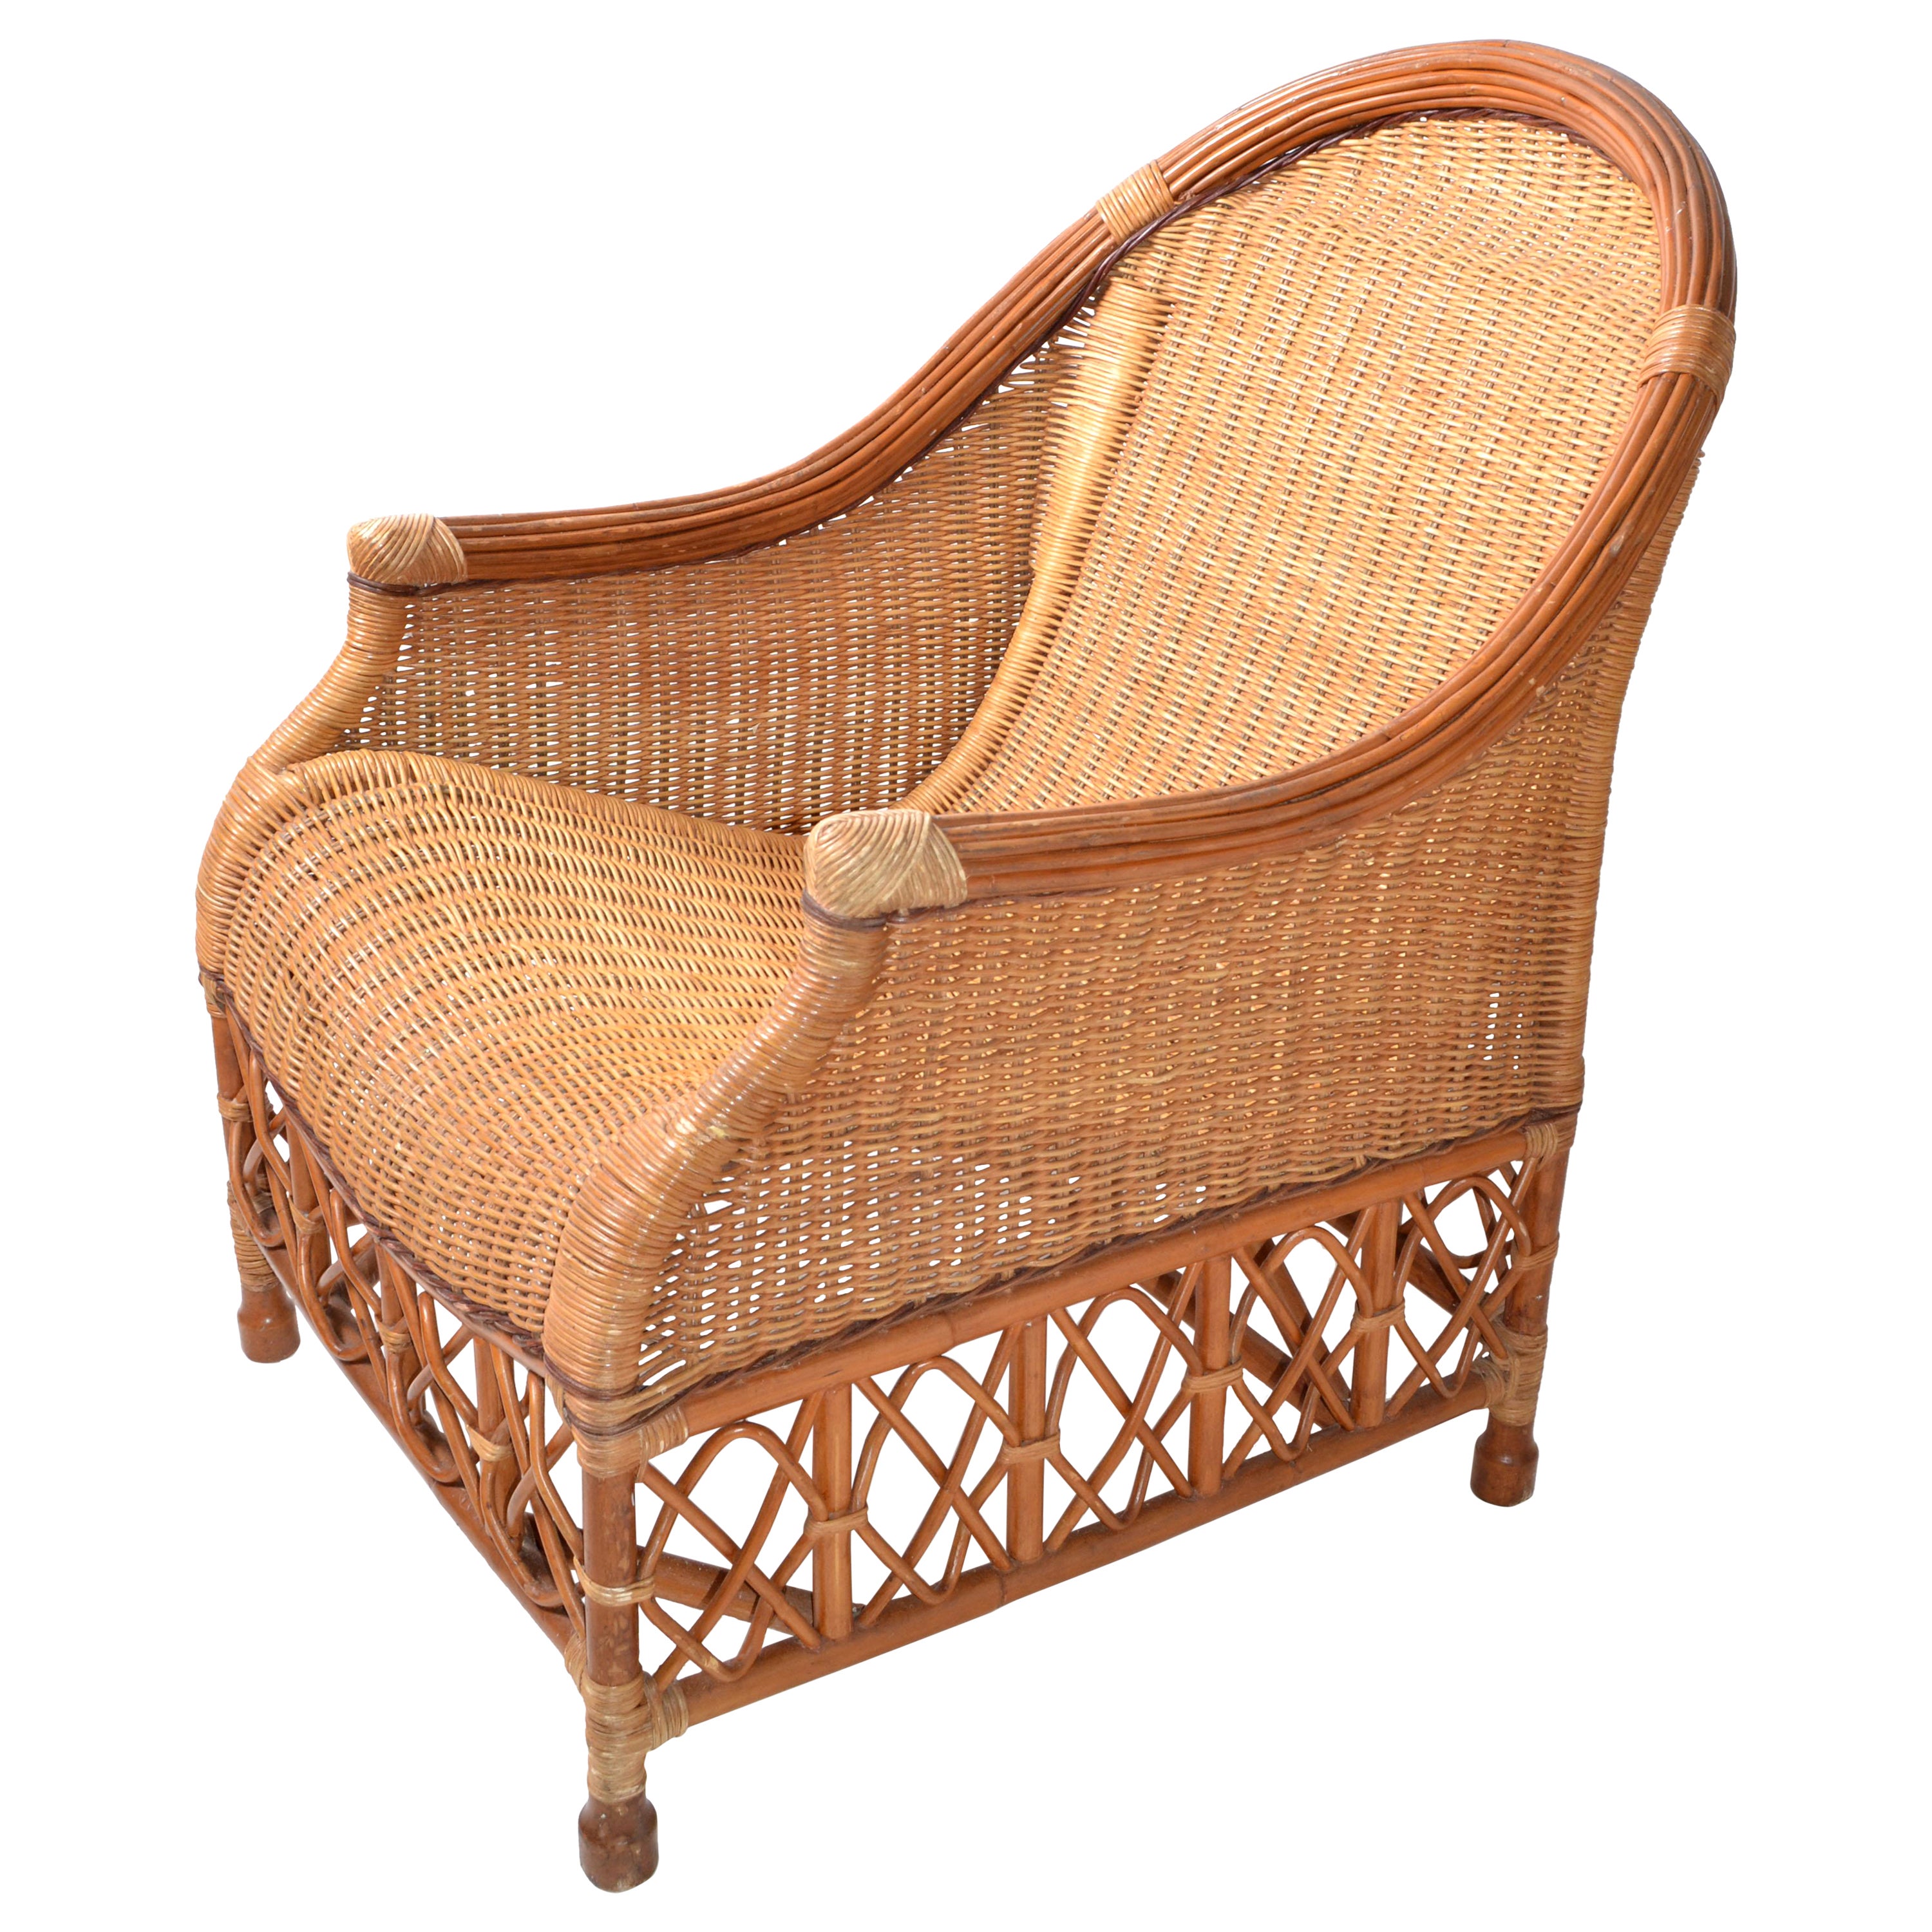 Chaise longue en bambou, canne et osier tissée à la main de style bohème, moderne du milieu du siècle dernier